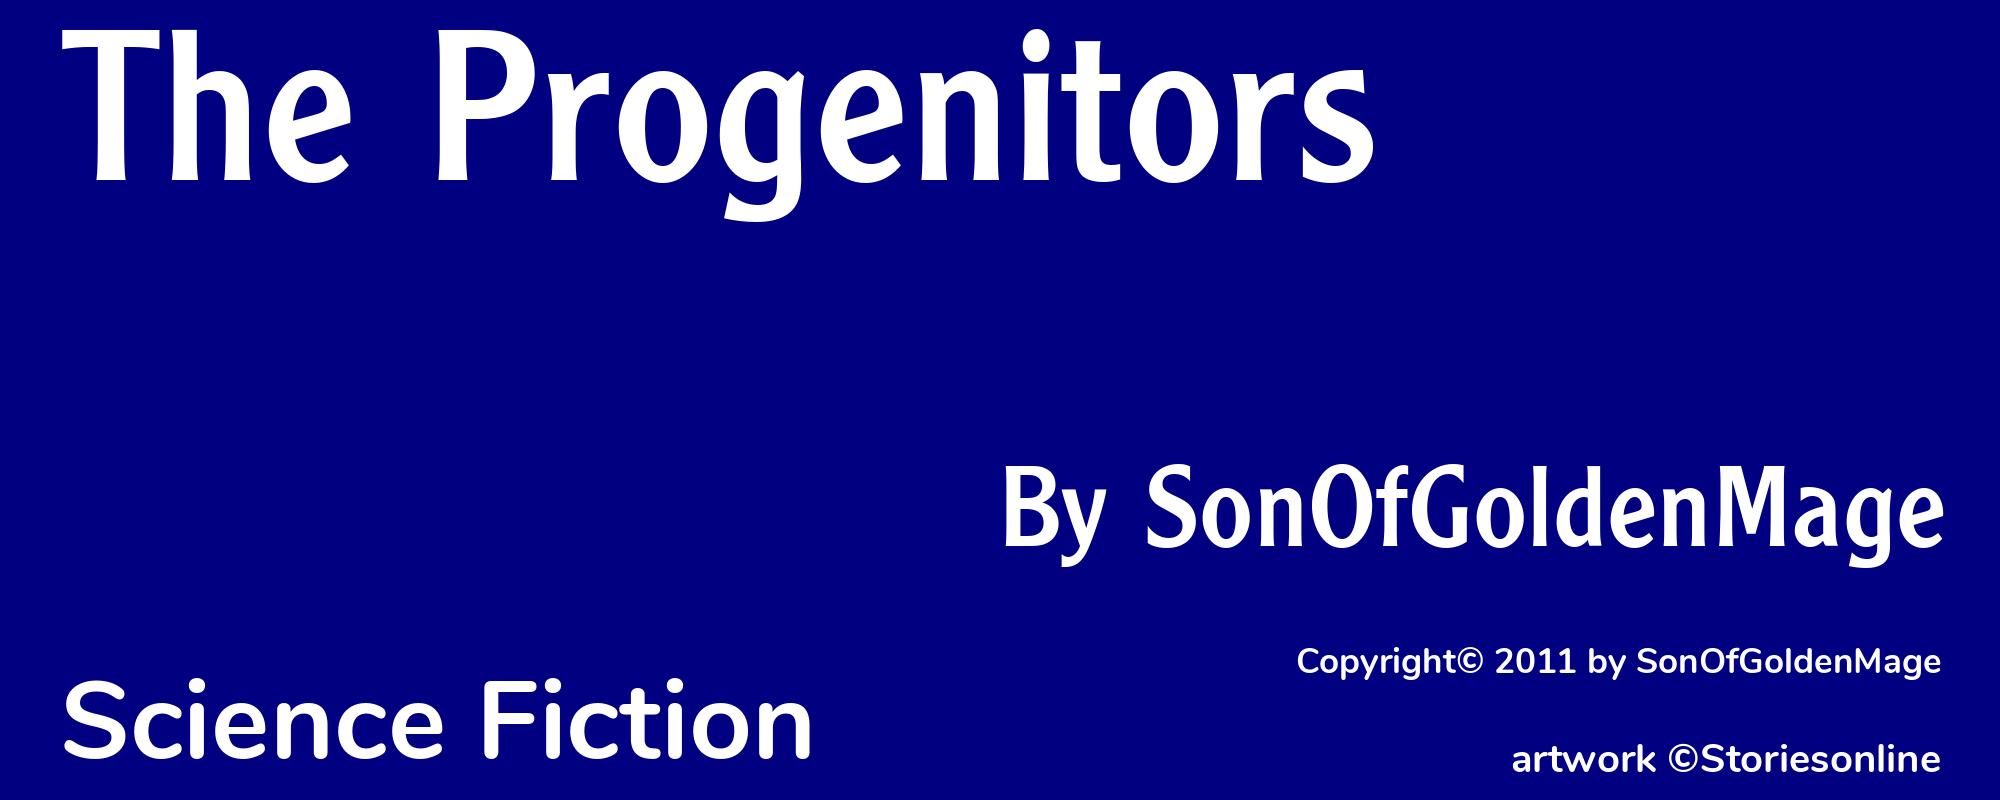 The Progenitors - Cover